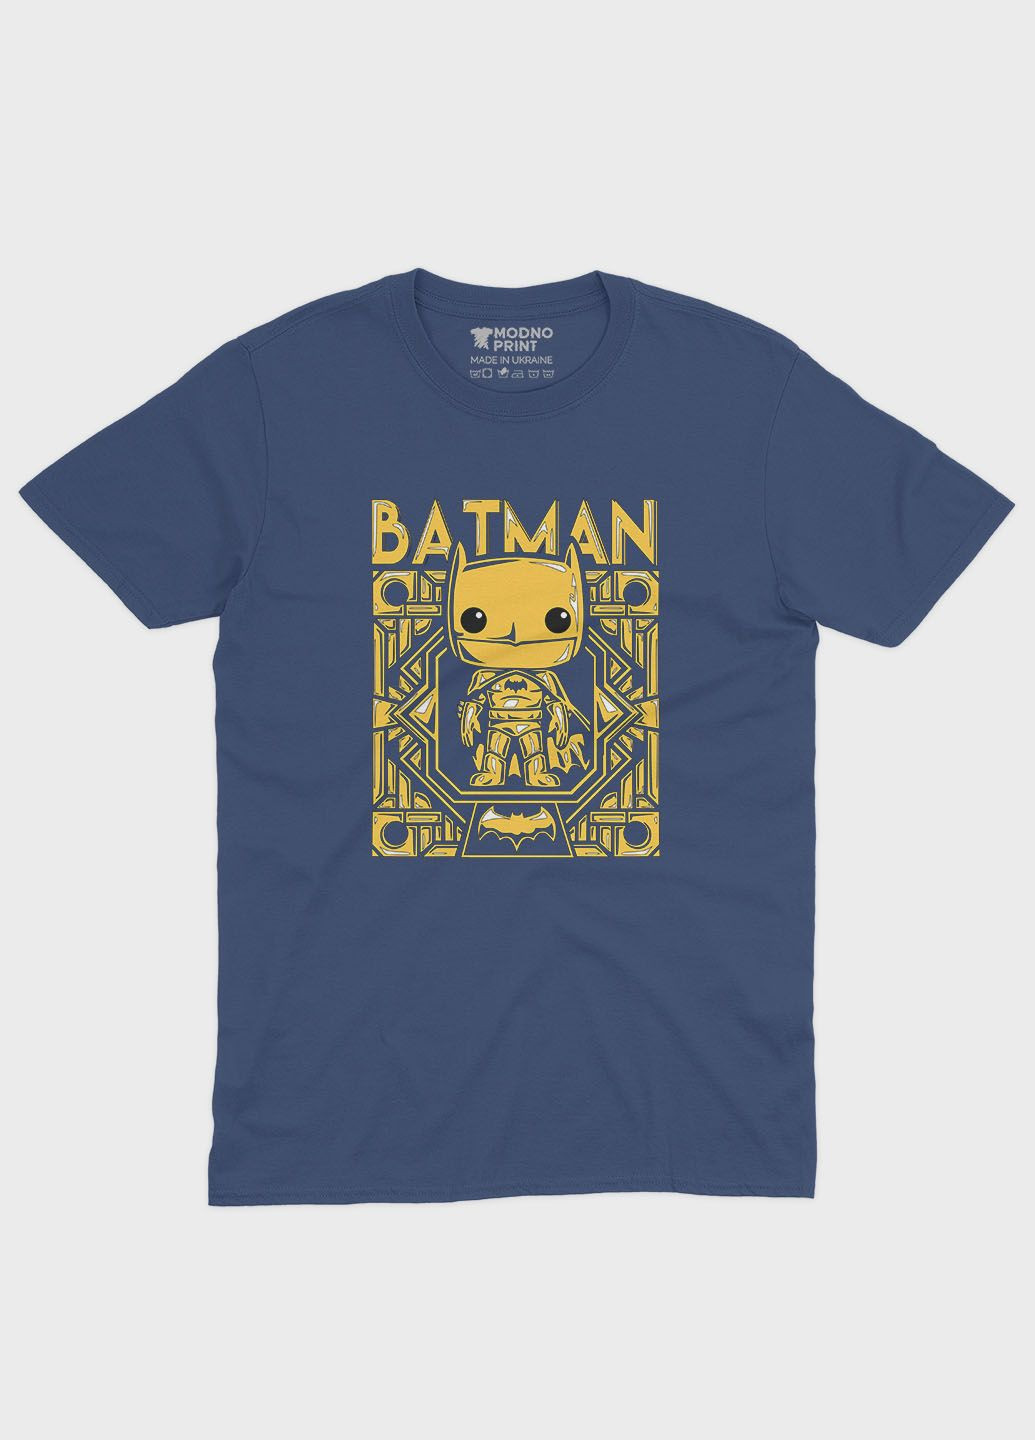 Темно-синяя демисезонная футболка для мальчика с принтом супергероя - бэтмен (ts001-1-nav-006-003-004-b) Modno